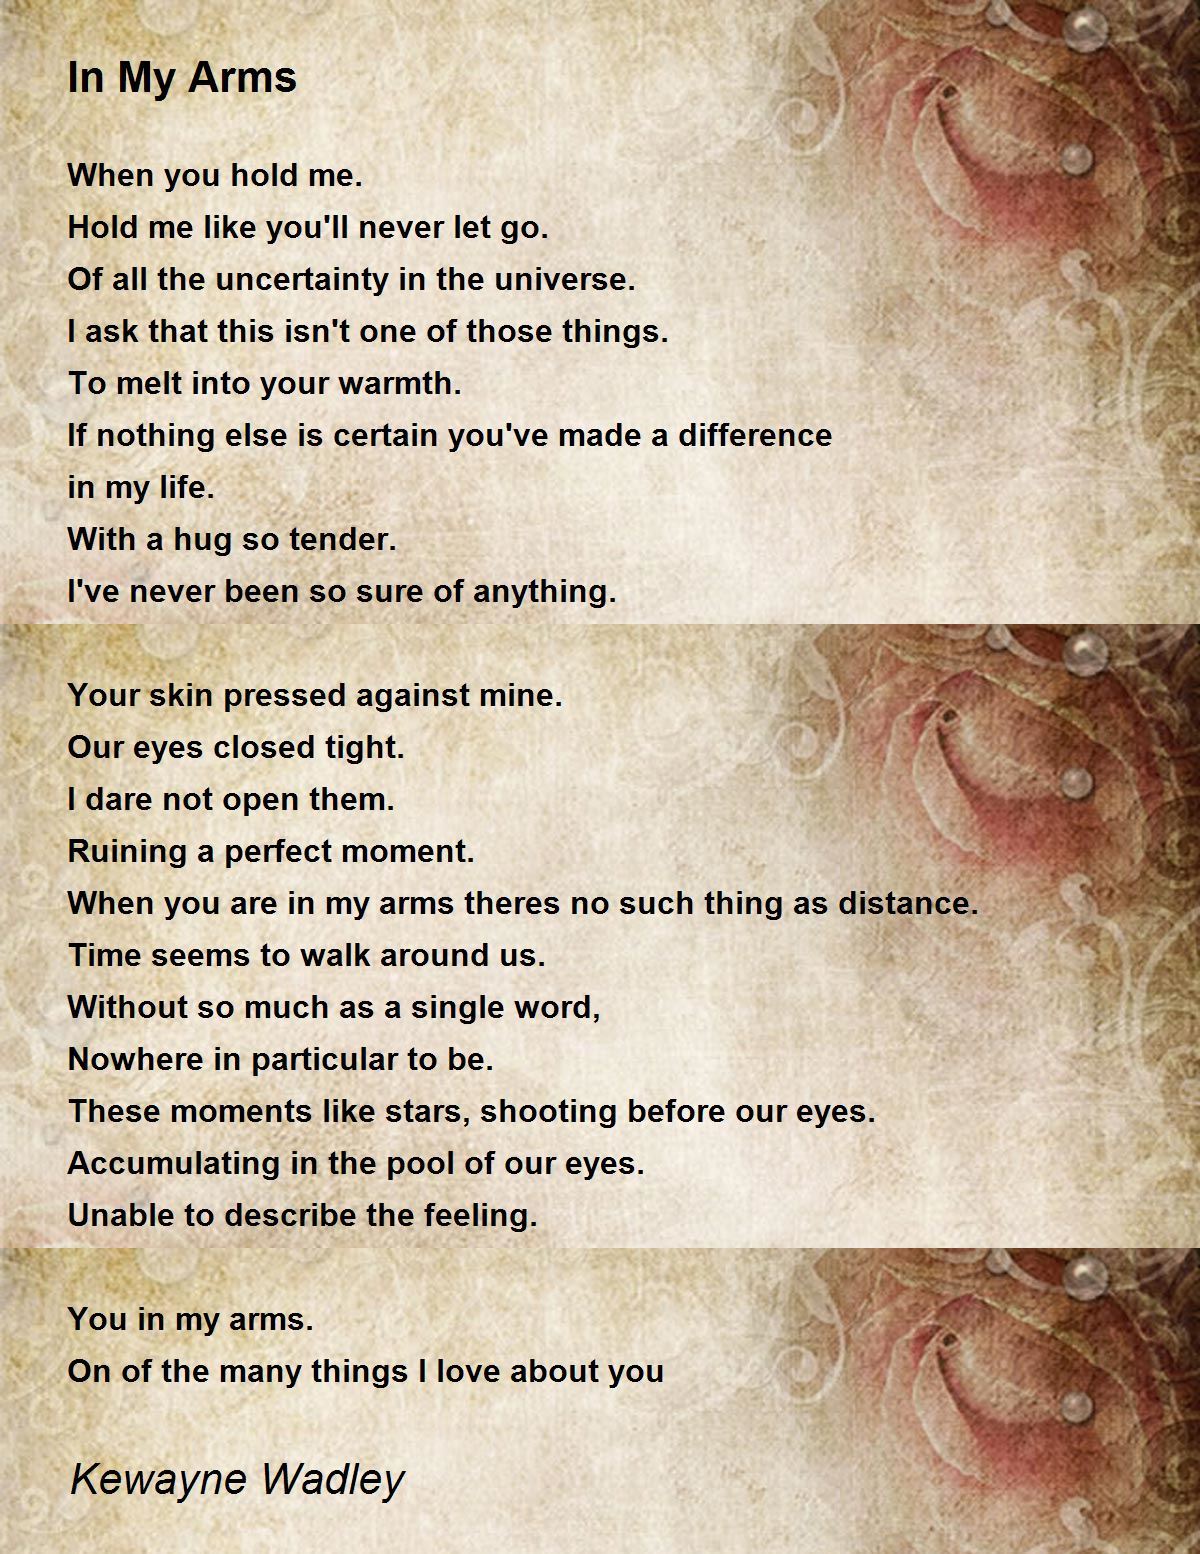 In My Arms - In My Arms Poem by Kewayne Wadley